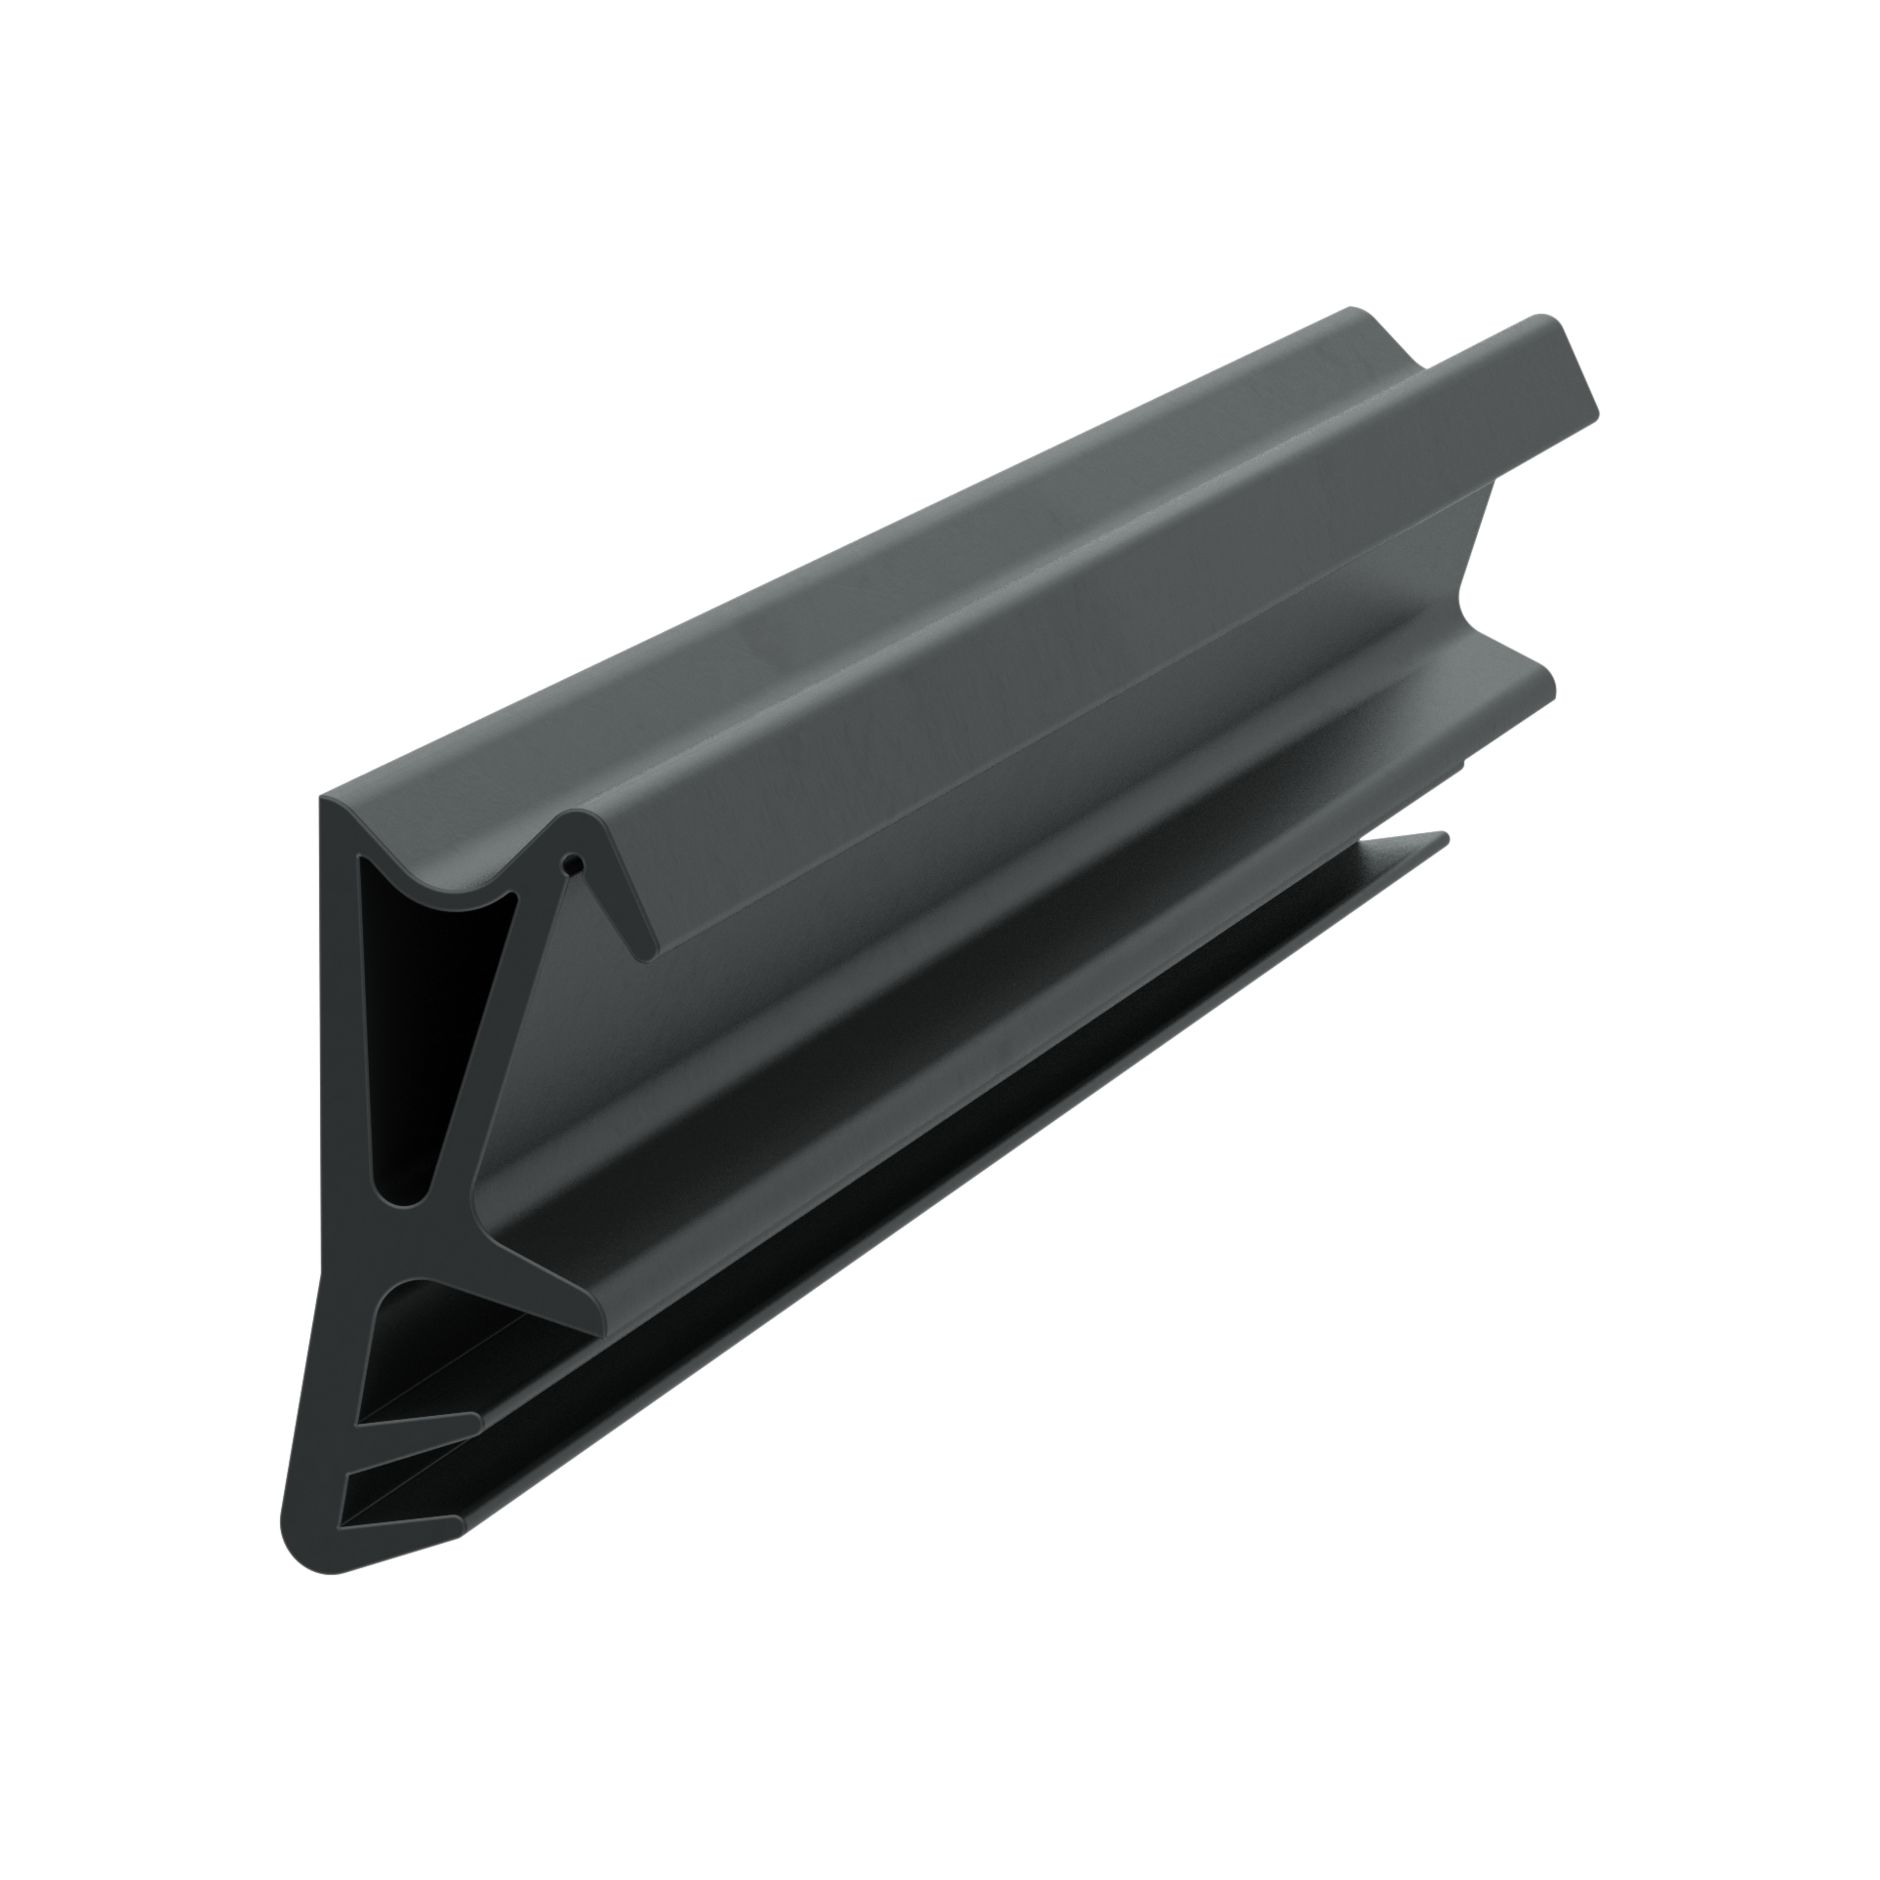 Dichtungen-Onlineshop - V-Dichtung 7 mm breit, für 1-8 mm Spalt in schwarz,  64245, R022/2